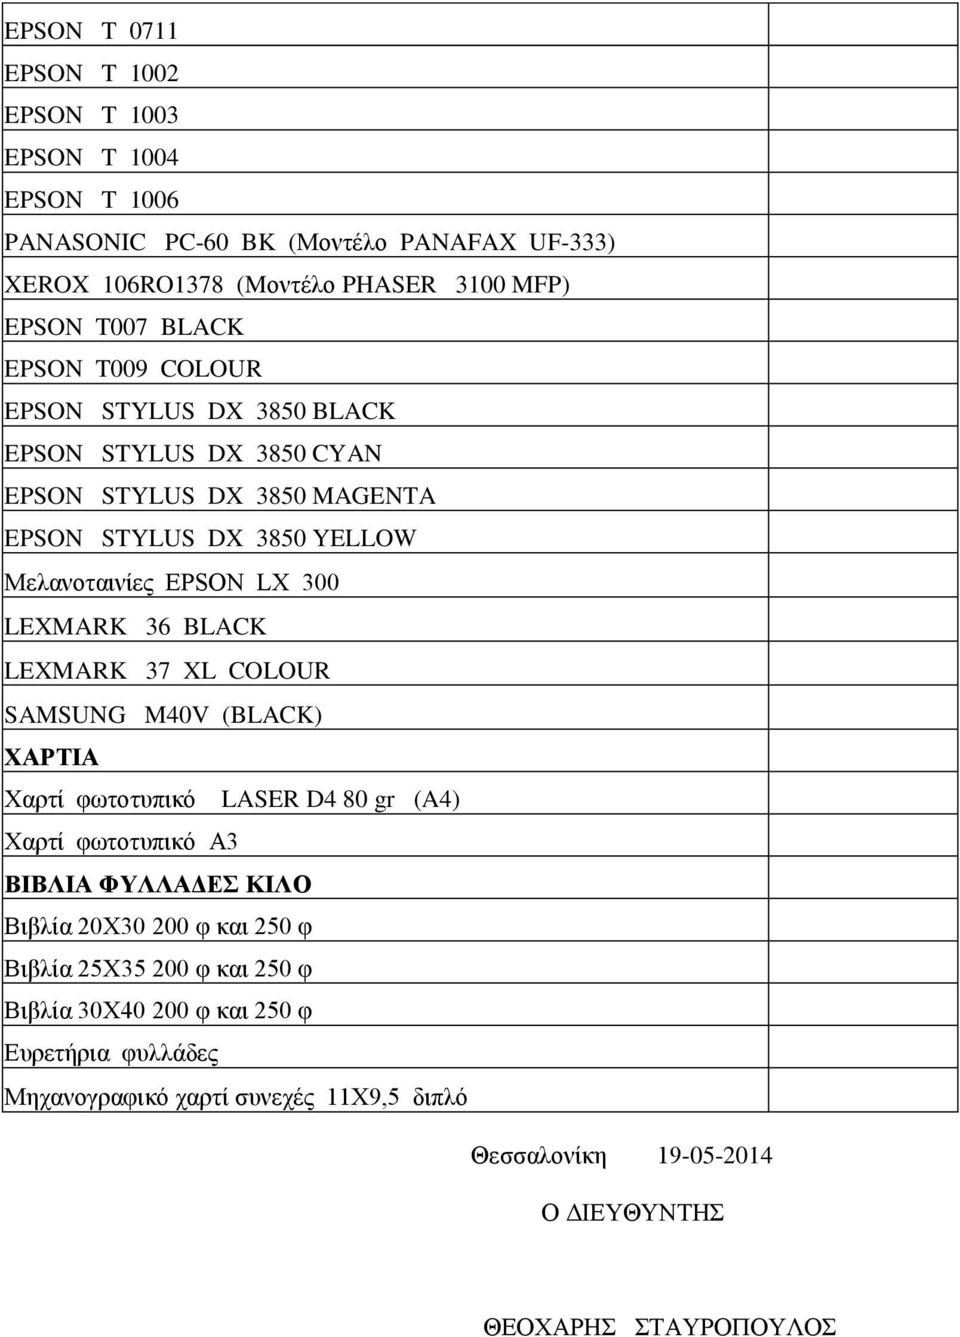 BLACK LEXMARK 37 XL COLOUR SAMSUNG M40V (BLACK) ΧΑΡΤΙΑ Χαρτί φωτοτυπικό LASER D4 80 gr (A4) Χαρτί φωτοτυπικό A3 ΒΙΒΛΙΑ ΦΥΛΛΑΔΕΣ ΚΙΛΟ Βιβλία 20Χ30 200 φ και 250 φ